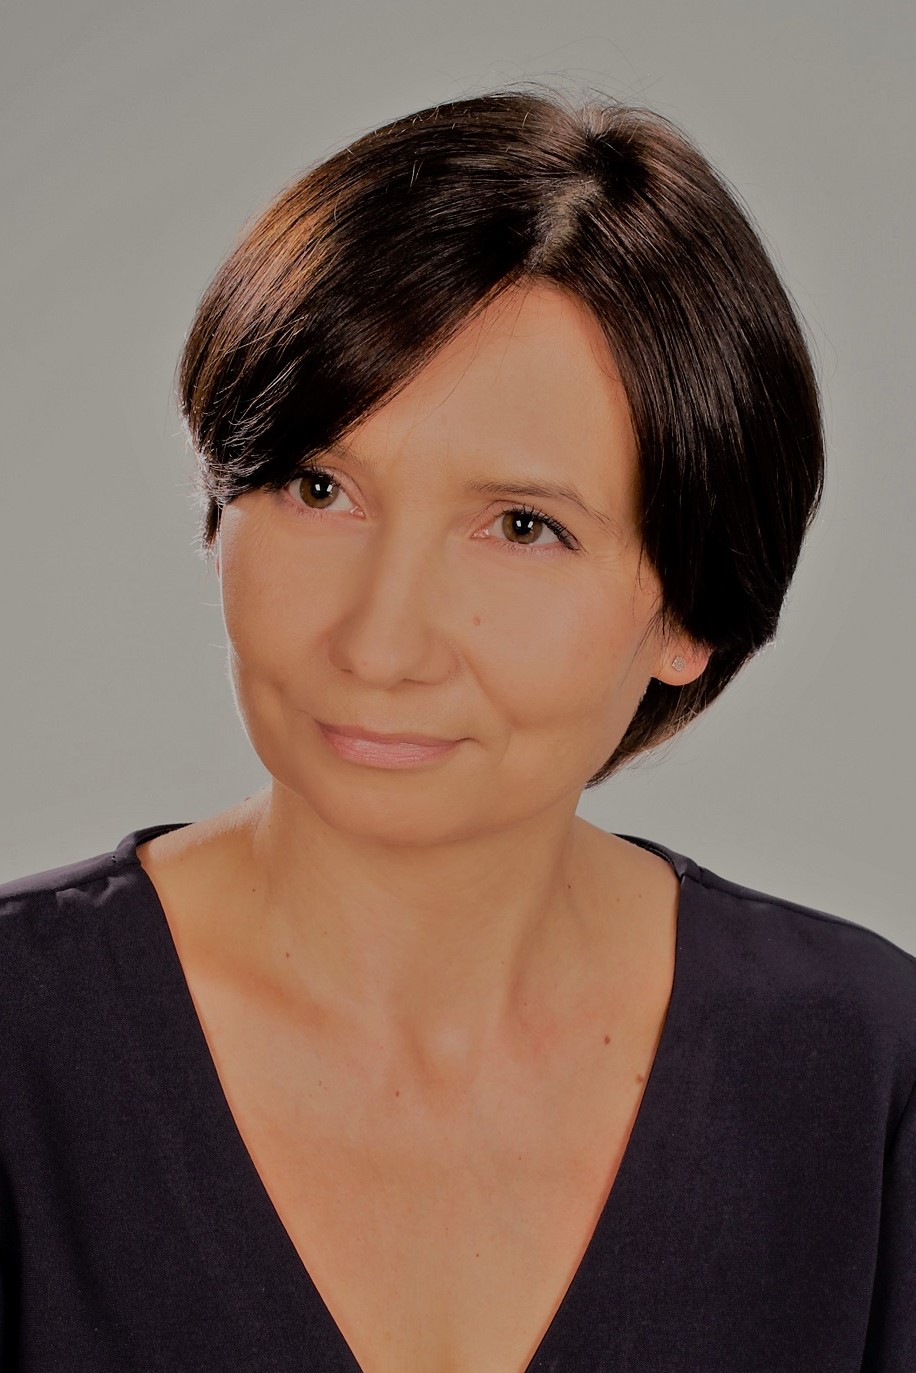 An image of Katarzyna Garbacz